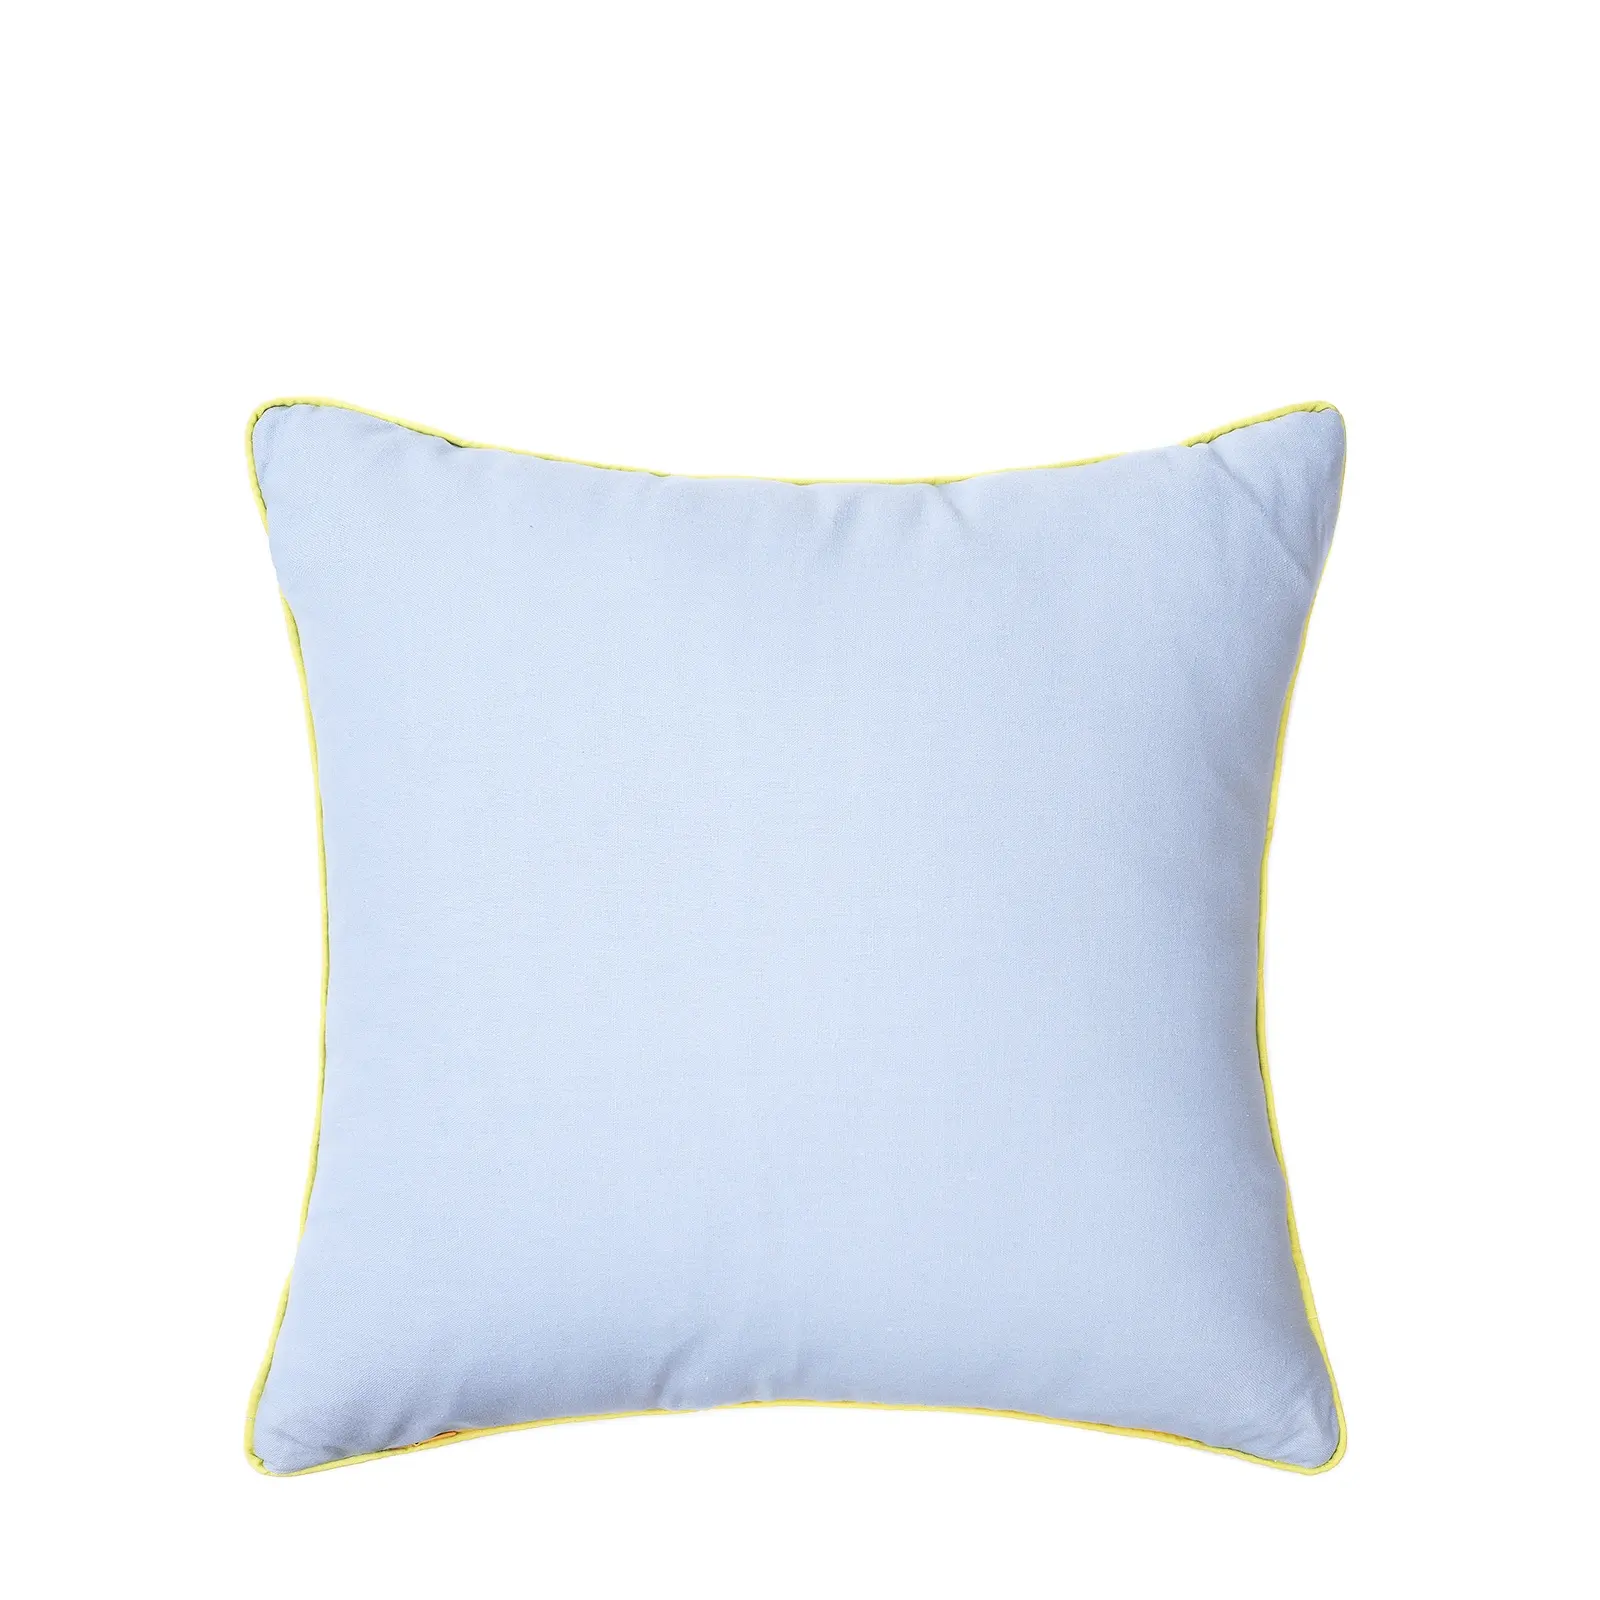 Funda de almohada de lino Multicolor para decoración del hogar, funda de almohada azul lisa con tubería